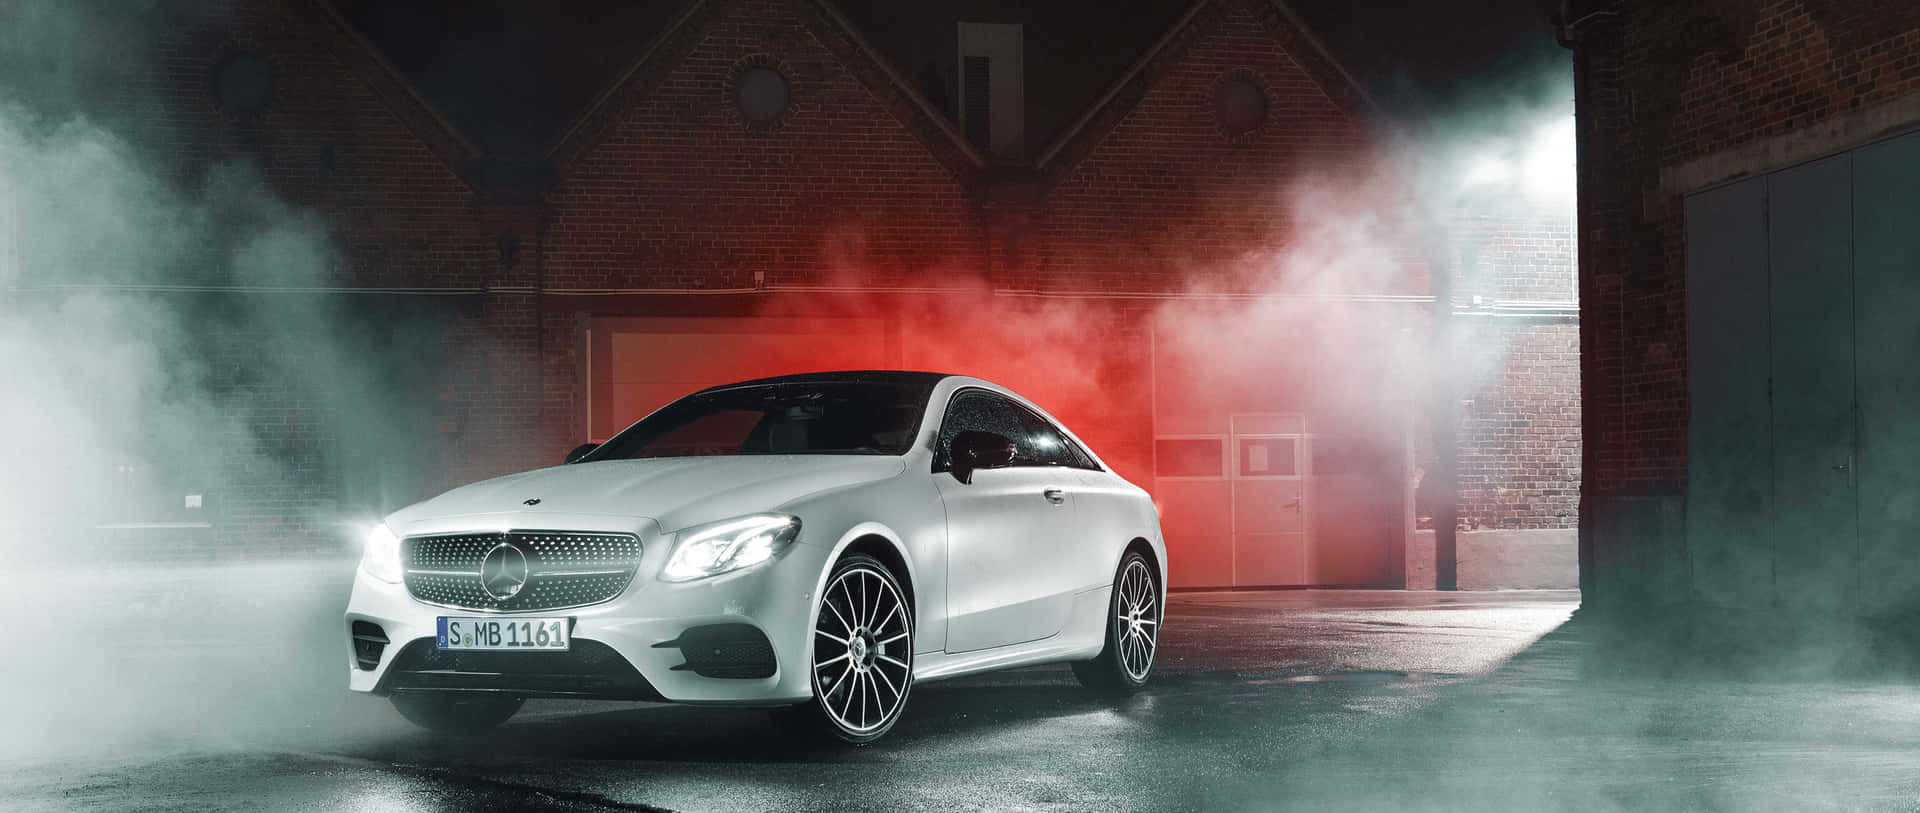 Tag din daglige rejse til nye højder med den tidløse Mercedes Car 4K. Wallpaper